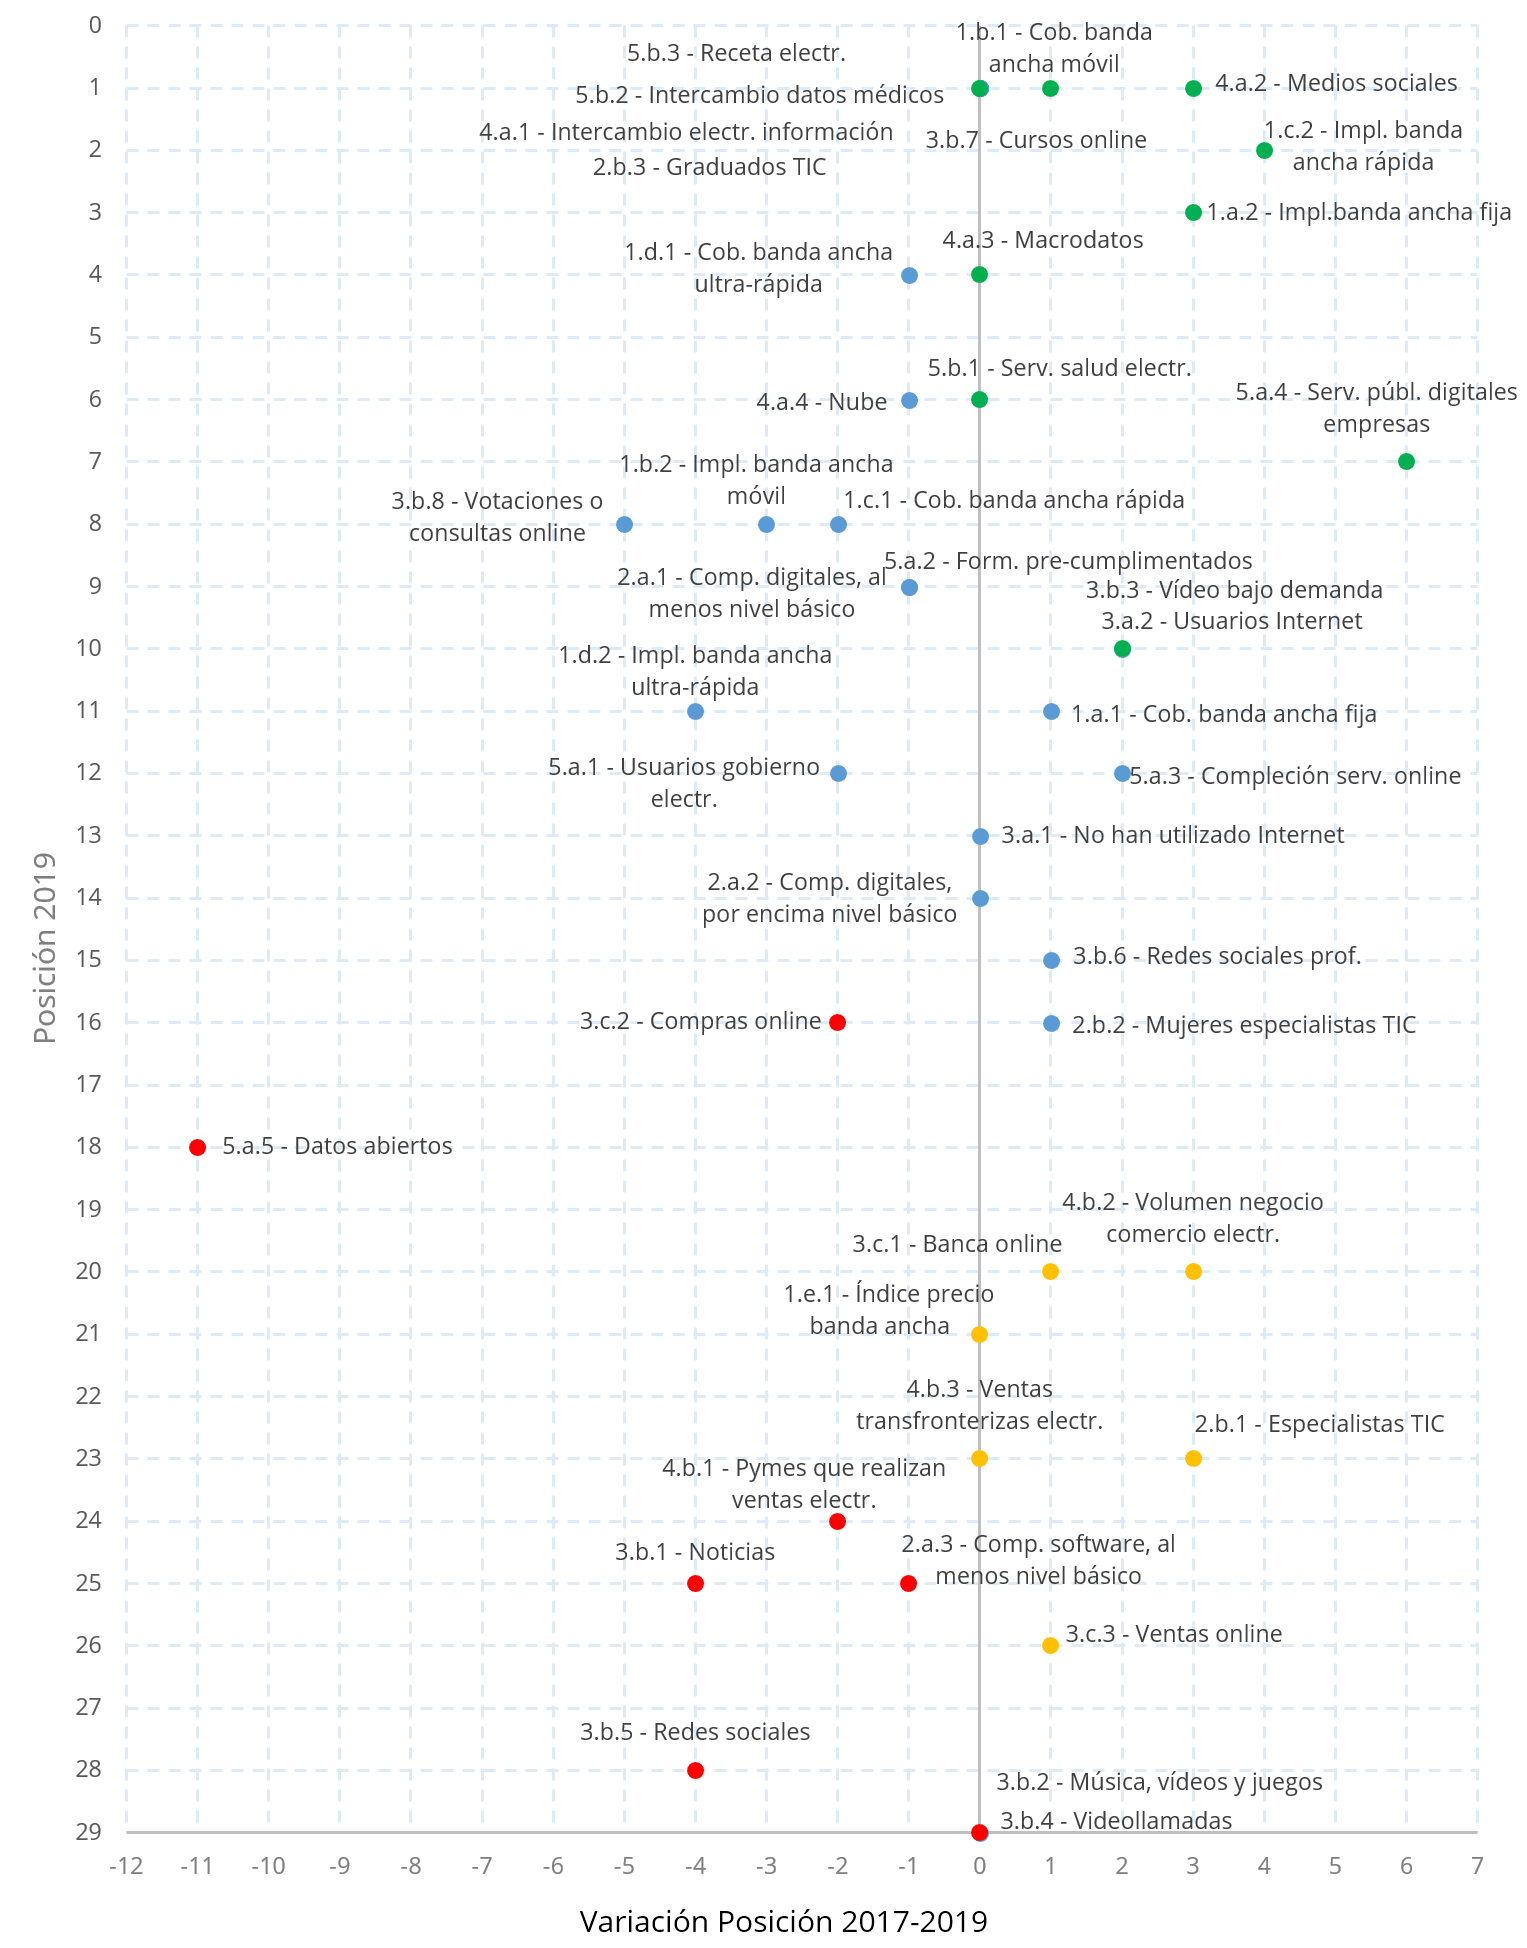 Gráfico 11. Evolución posicional de indicadores (2017-2019)